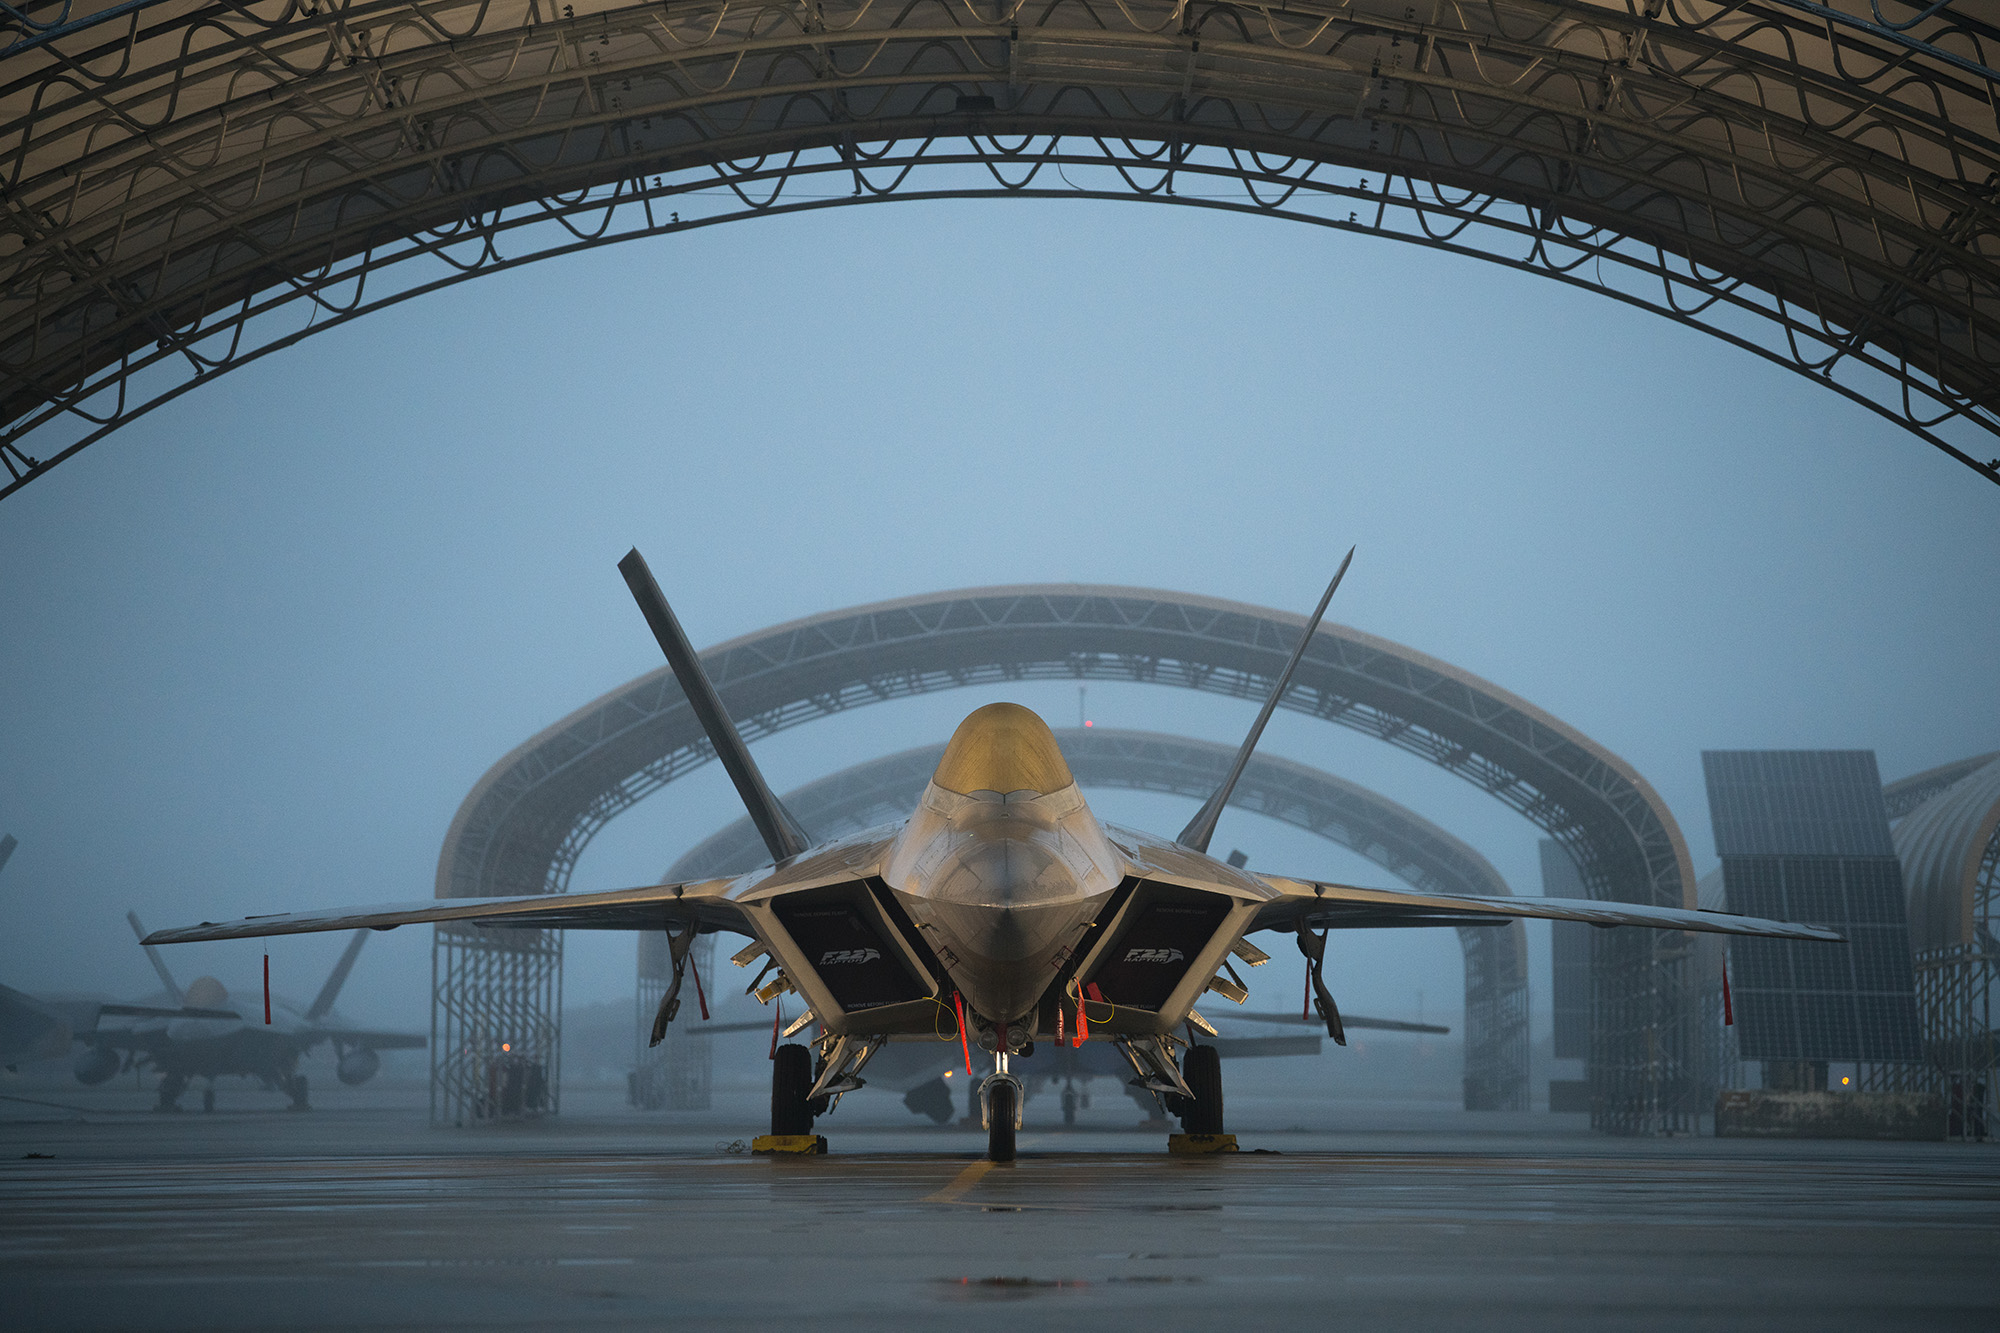 EE.UU. envía a Polonia cazas de quinta generación F-22 Raptor